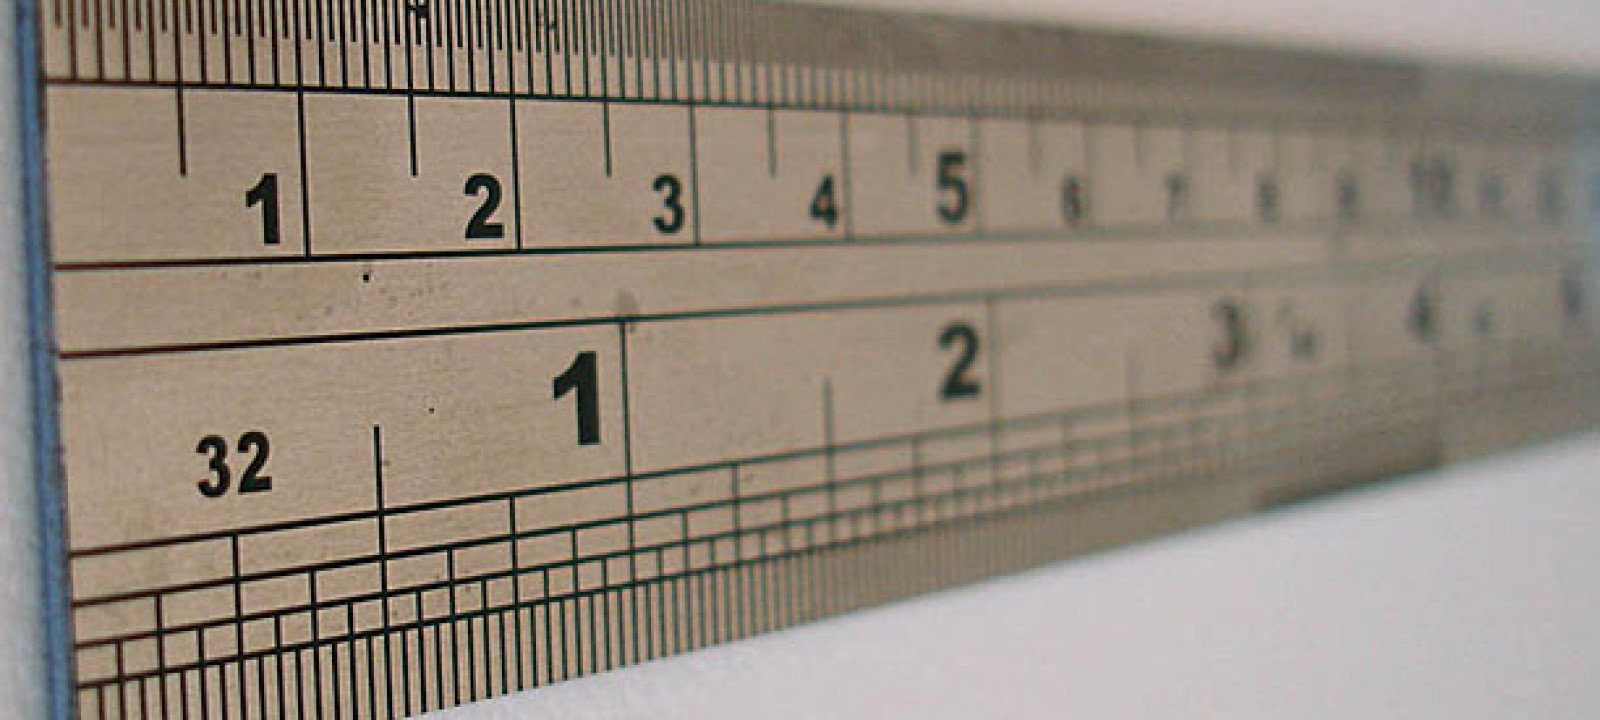 millimeter ruler